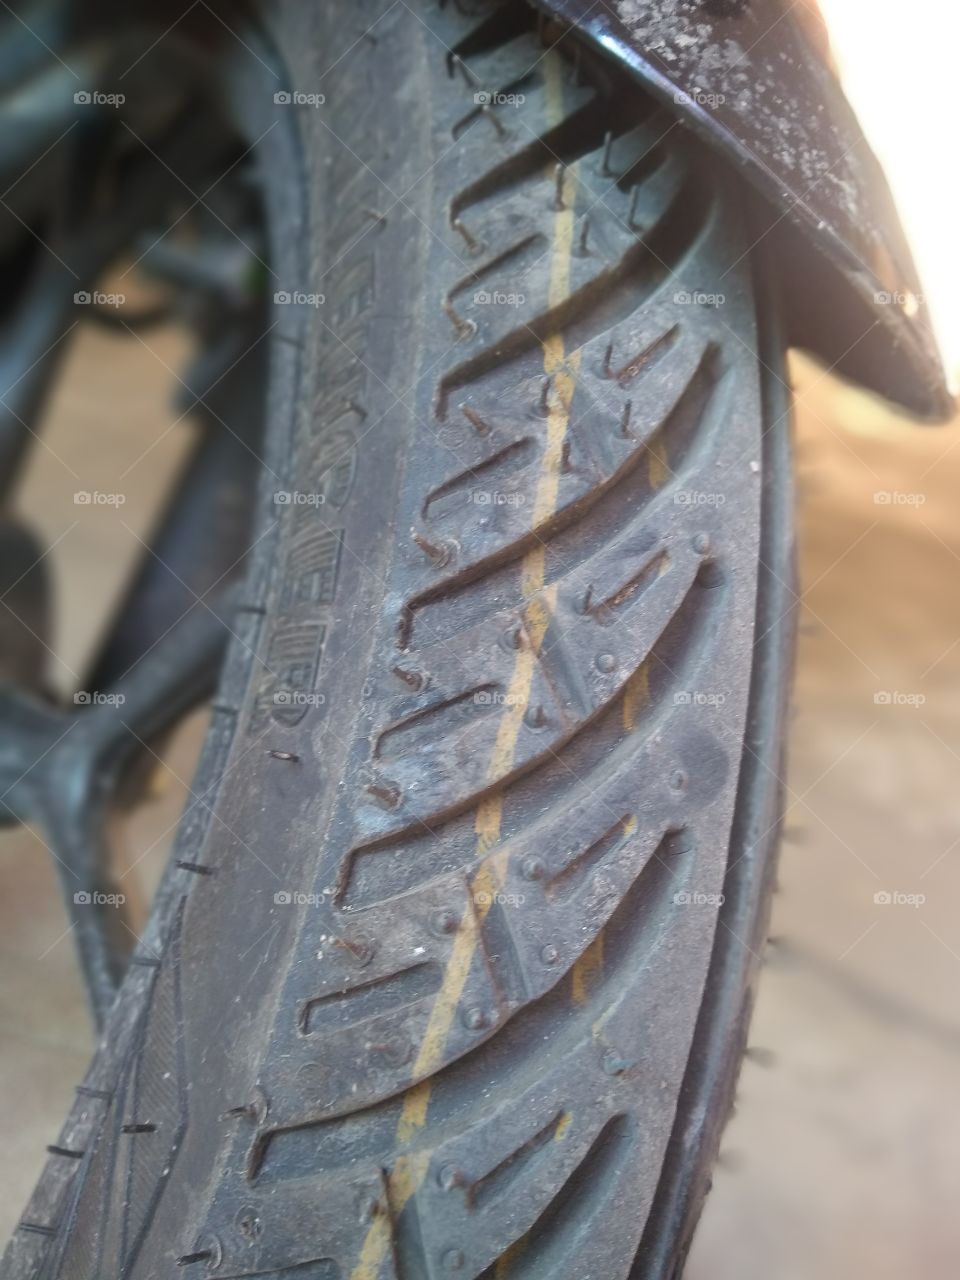 Dusty Tyre